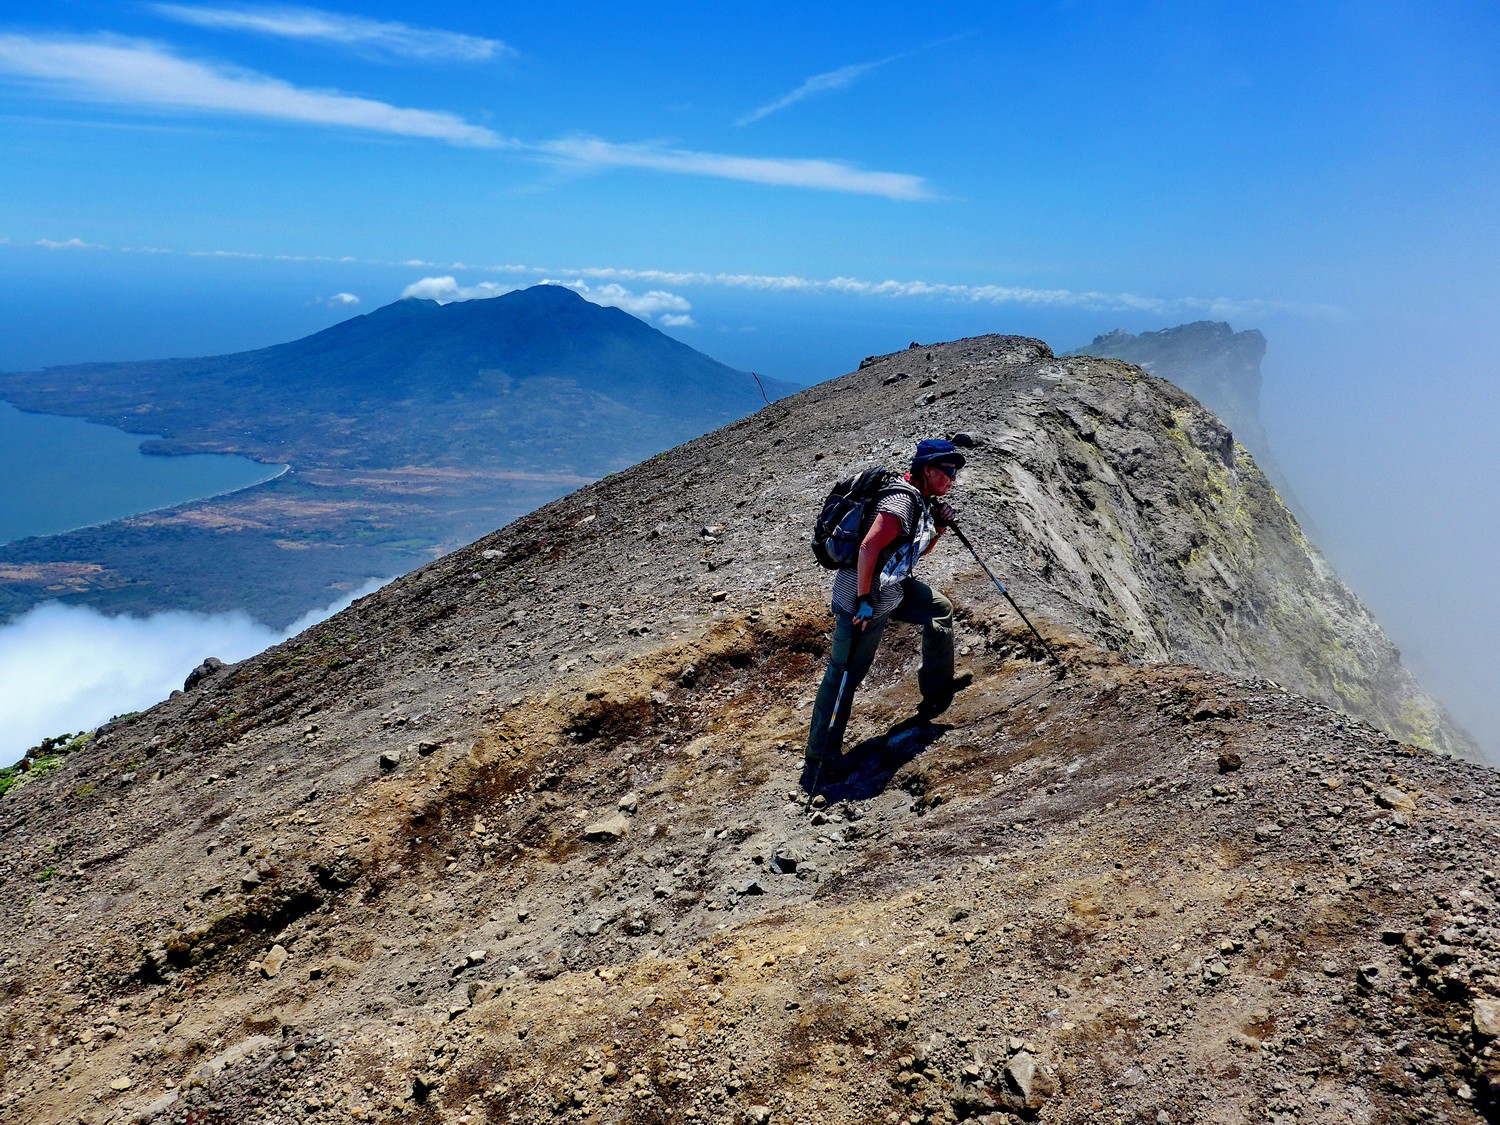 Summit of 1610 meters high Volcan Conceptión